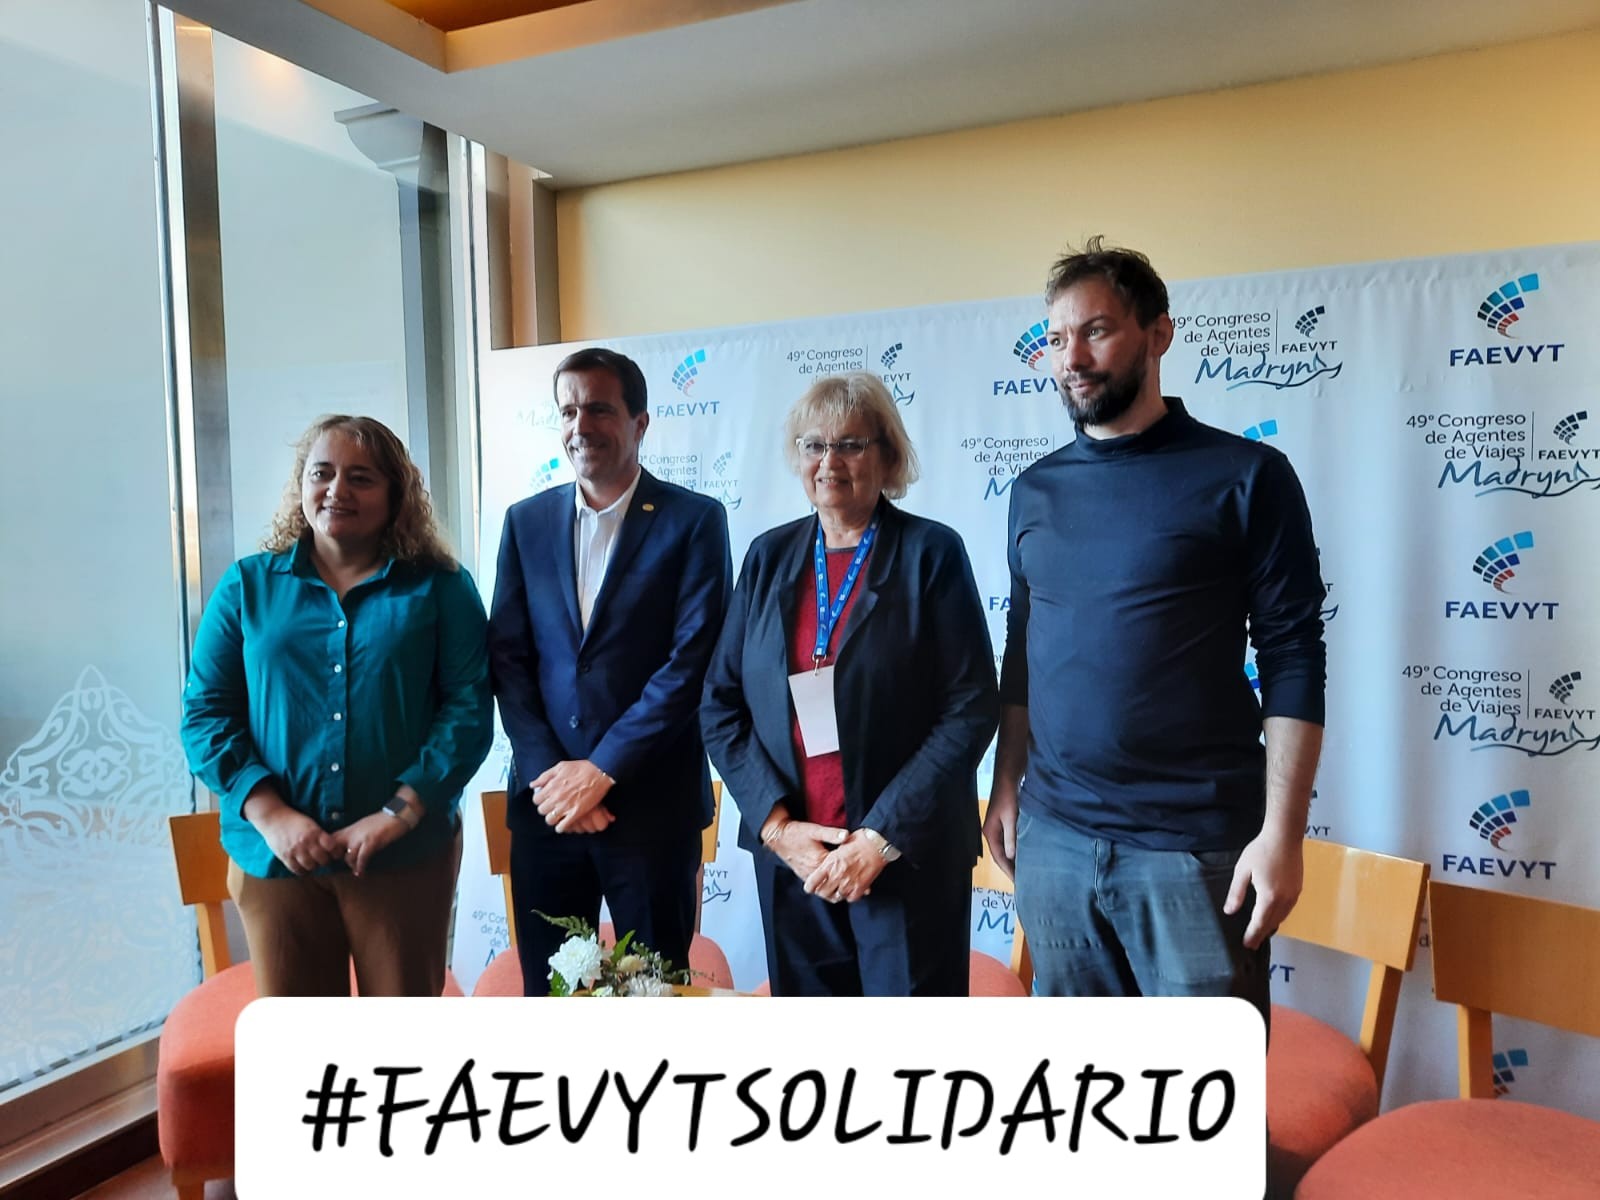 FAEVYT Solidario